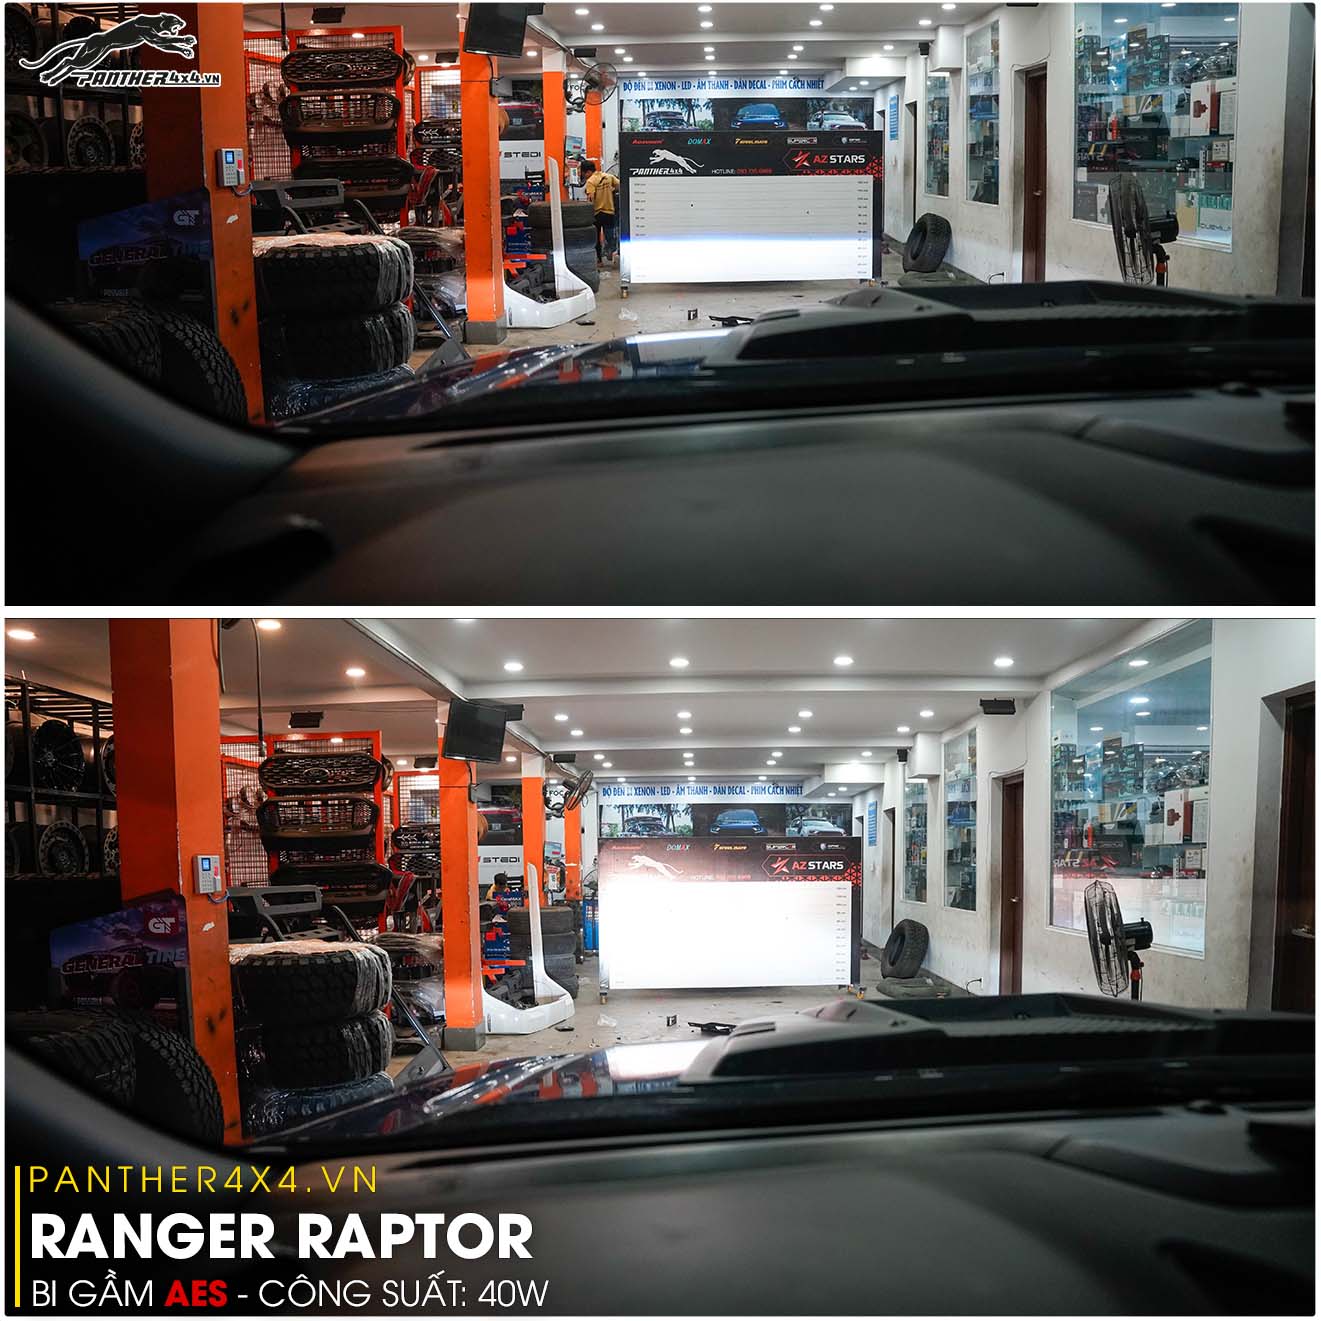 test ánh sáng Bi gầm AES cho Ranger Raptor